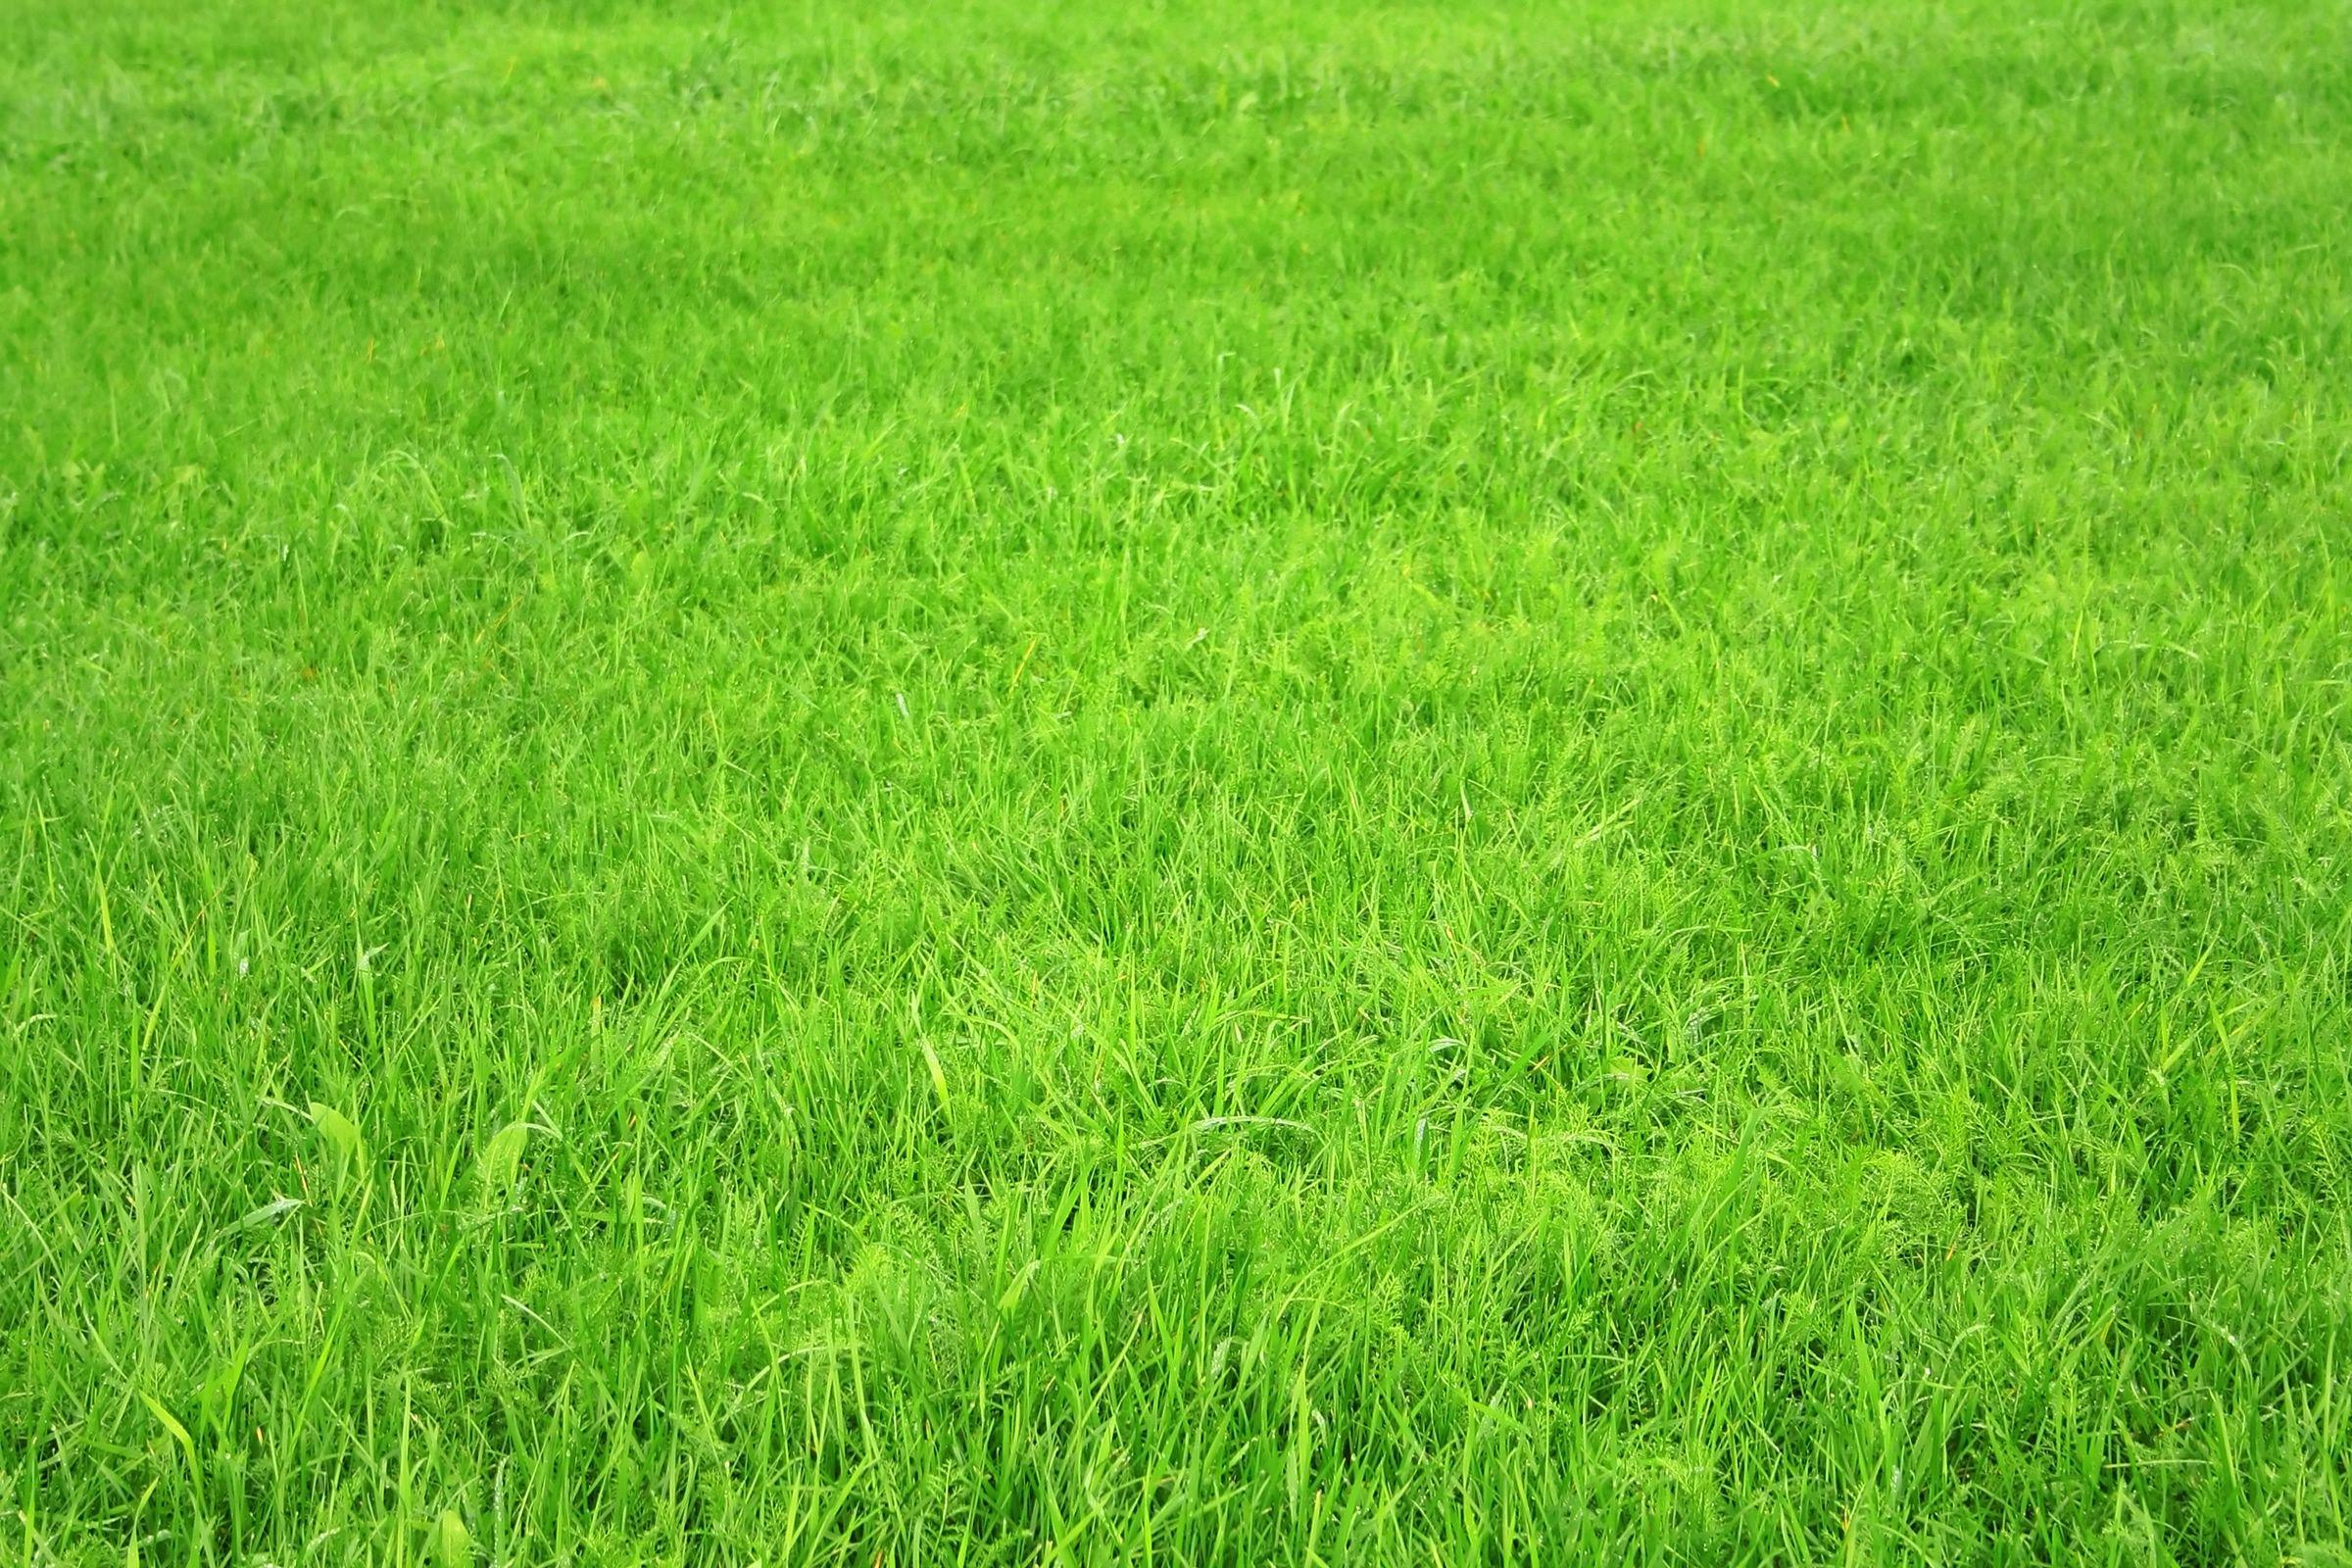 Download wallpaper: green Grass, texture grass, desktop wallpaper